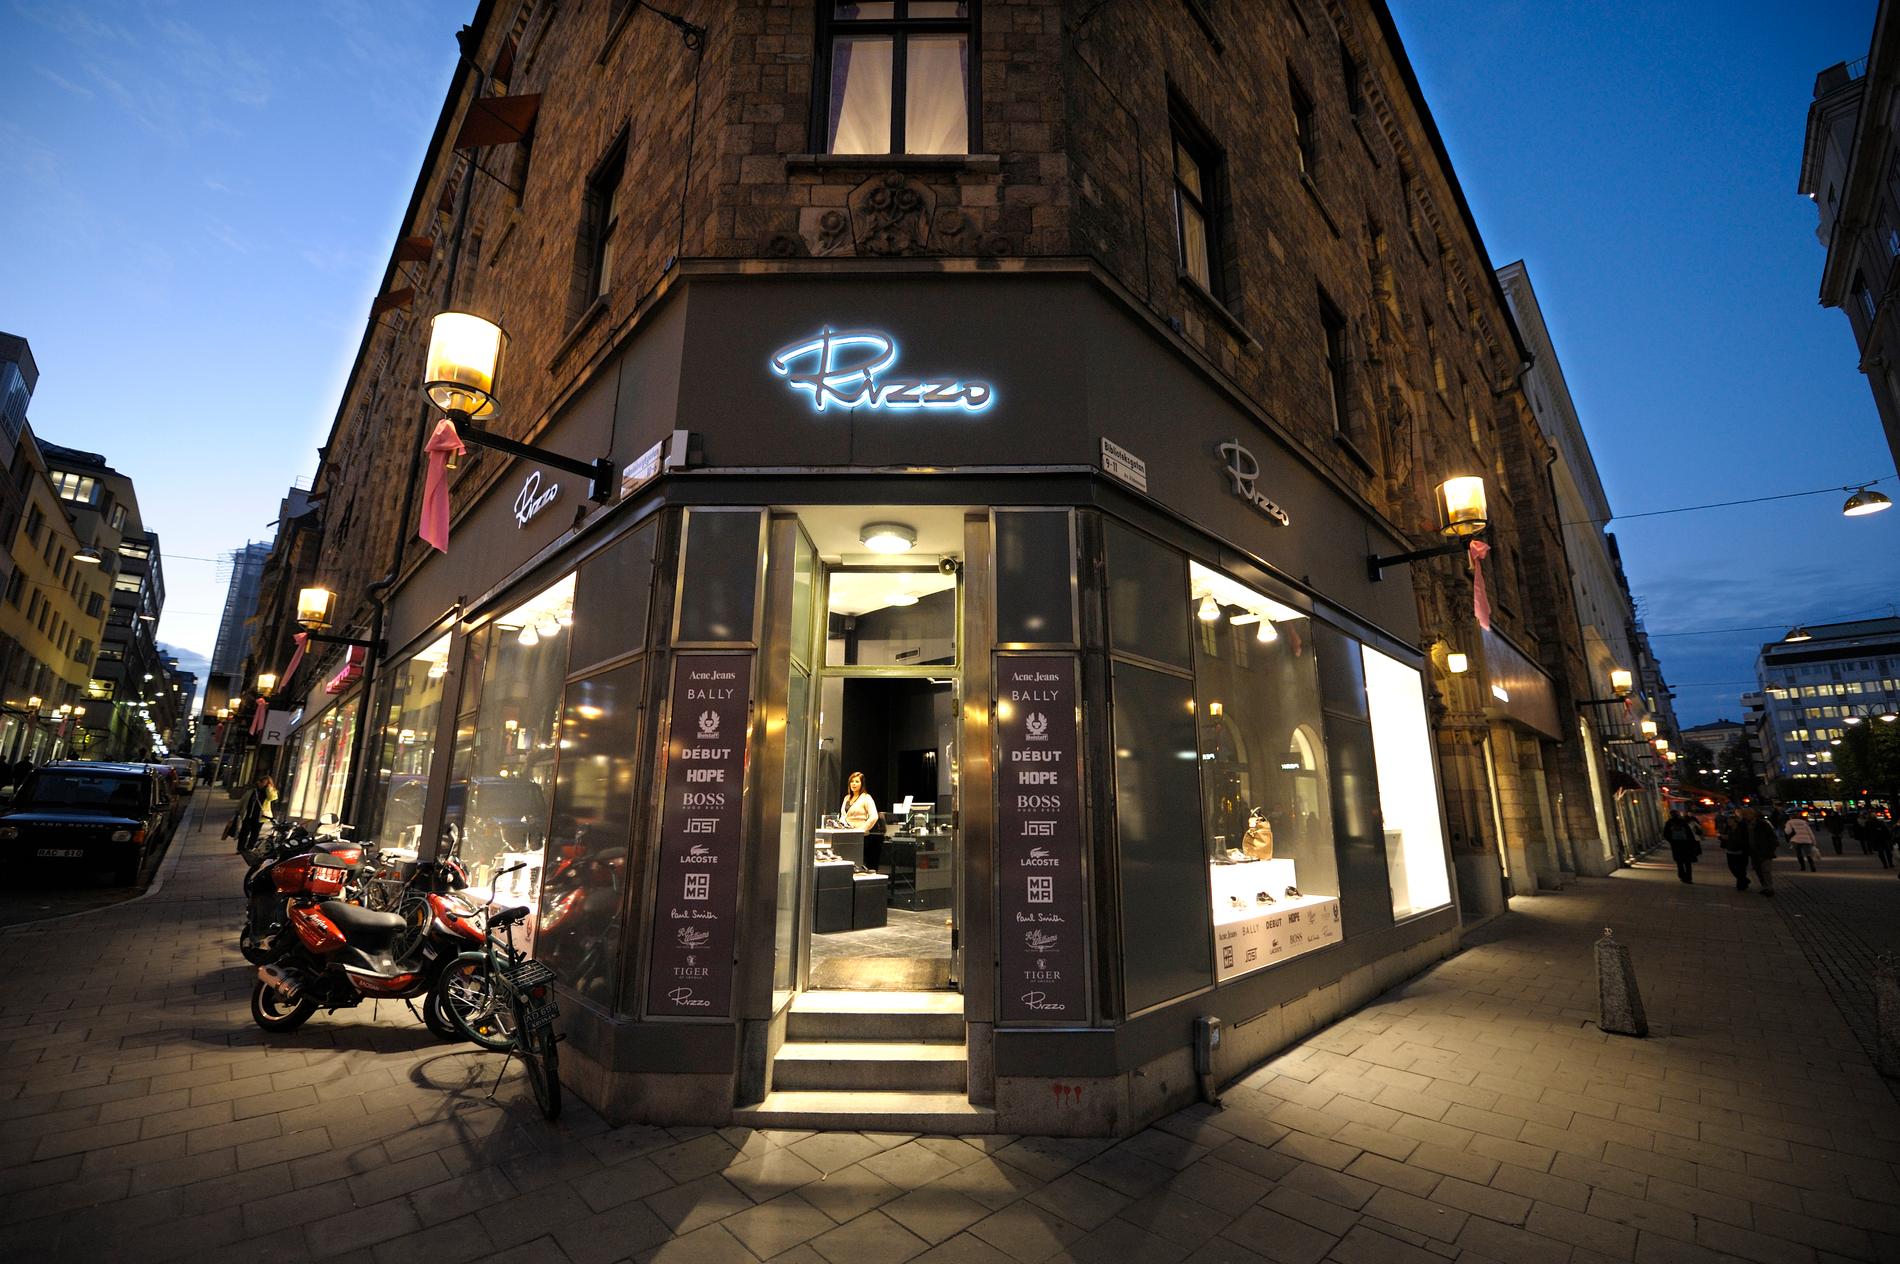 En Rizzo-butik i Stockholm.